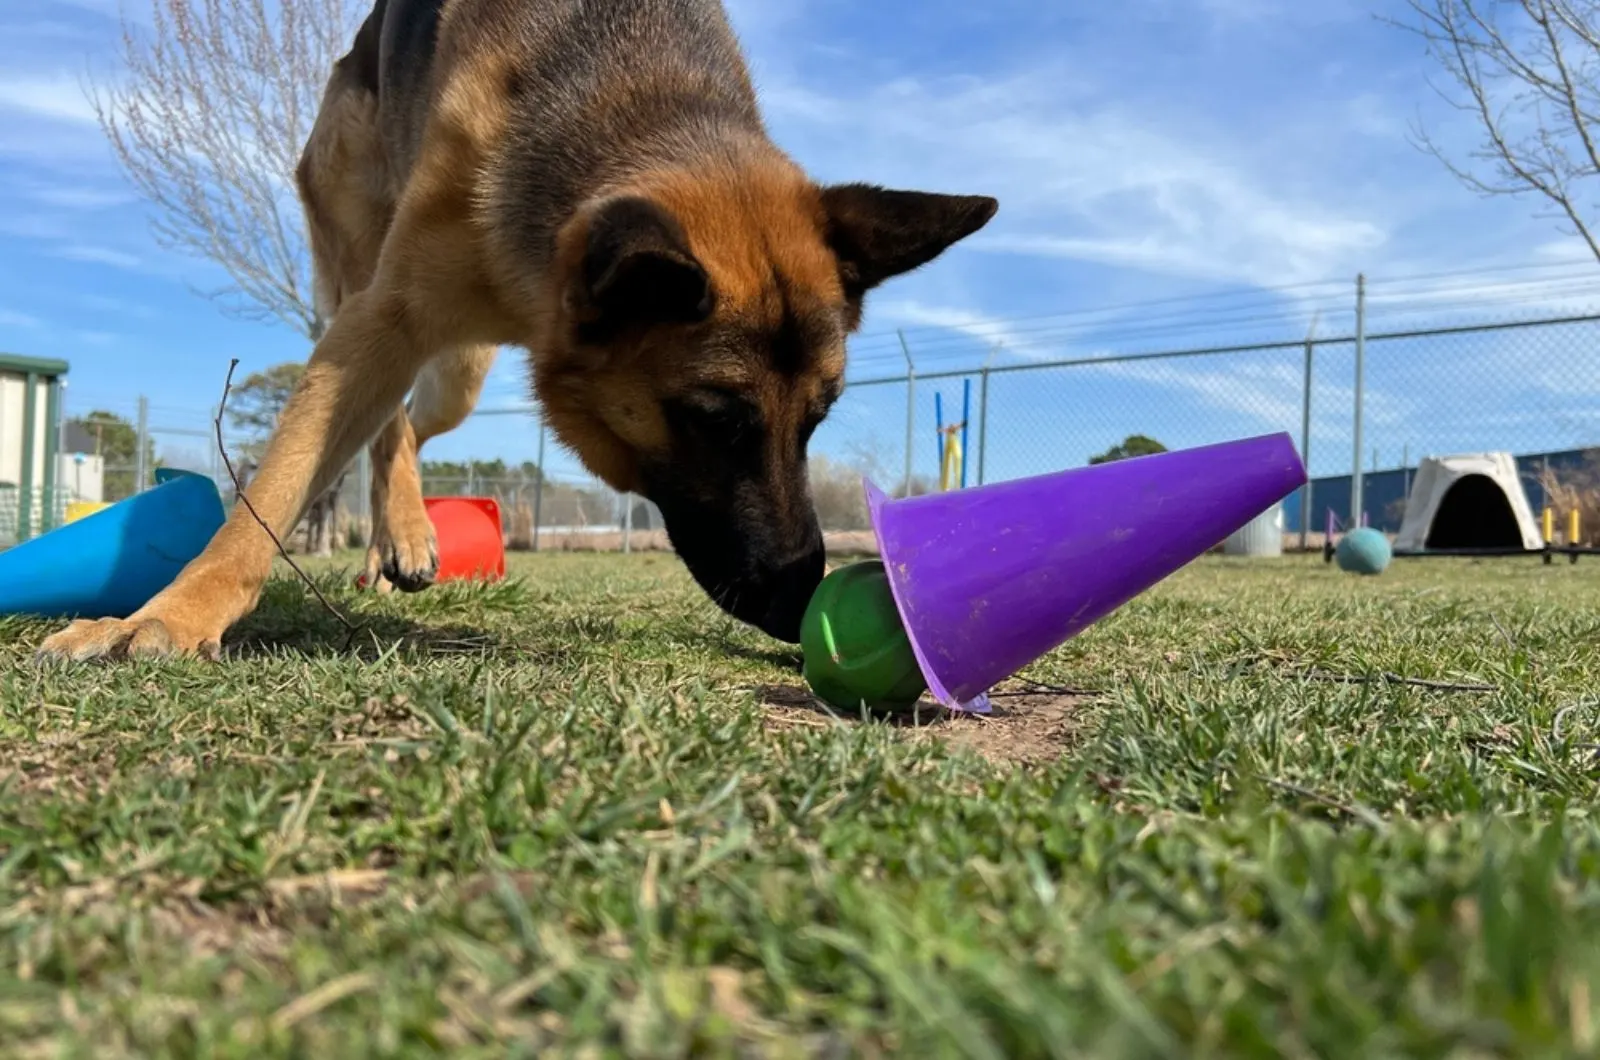 german shepherd dog finds favorite toy ball hidden under purple cone